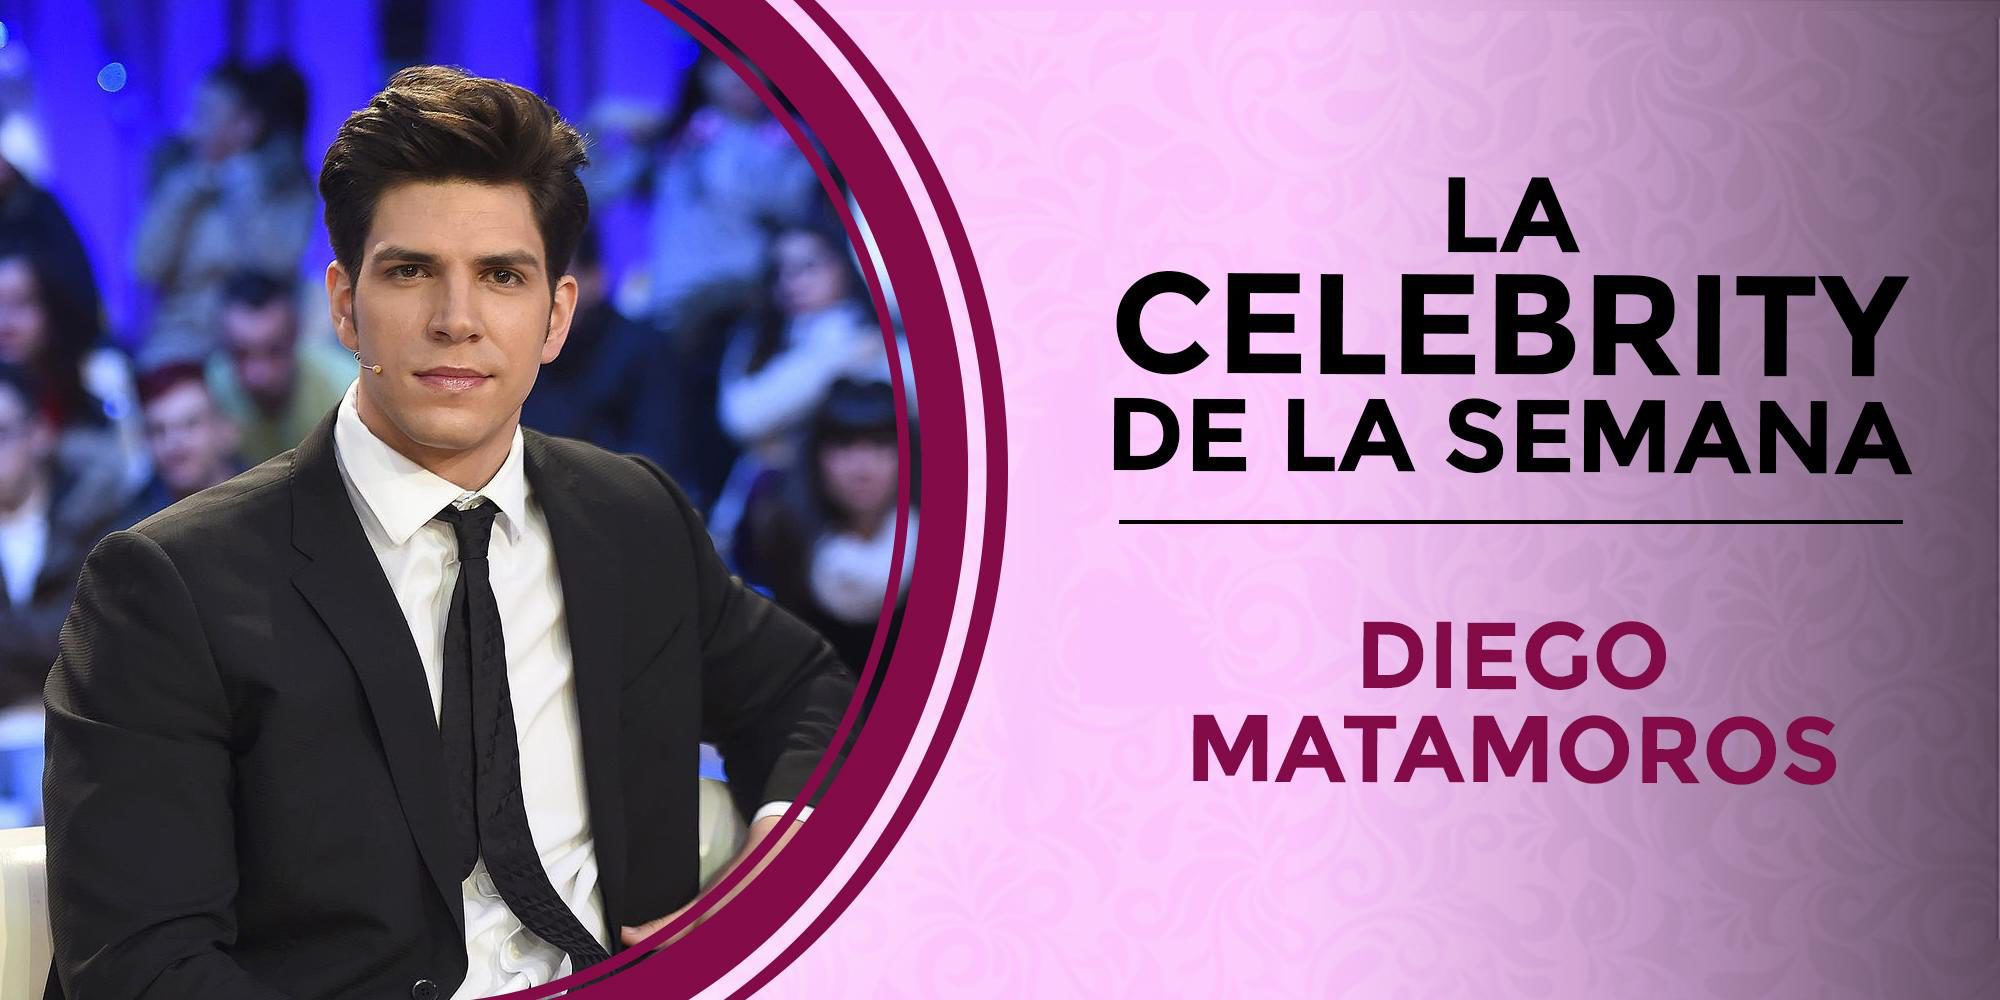 Una denuncia por maltrato, un juicio y una 'falsa' paternidad: Diego Matamoros es la celebrity de la semana